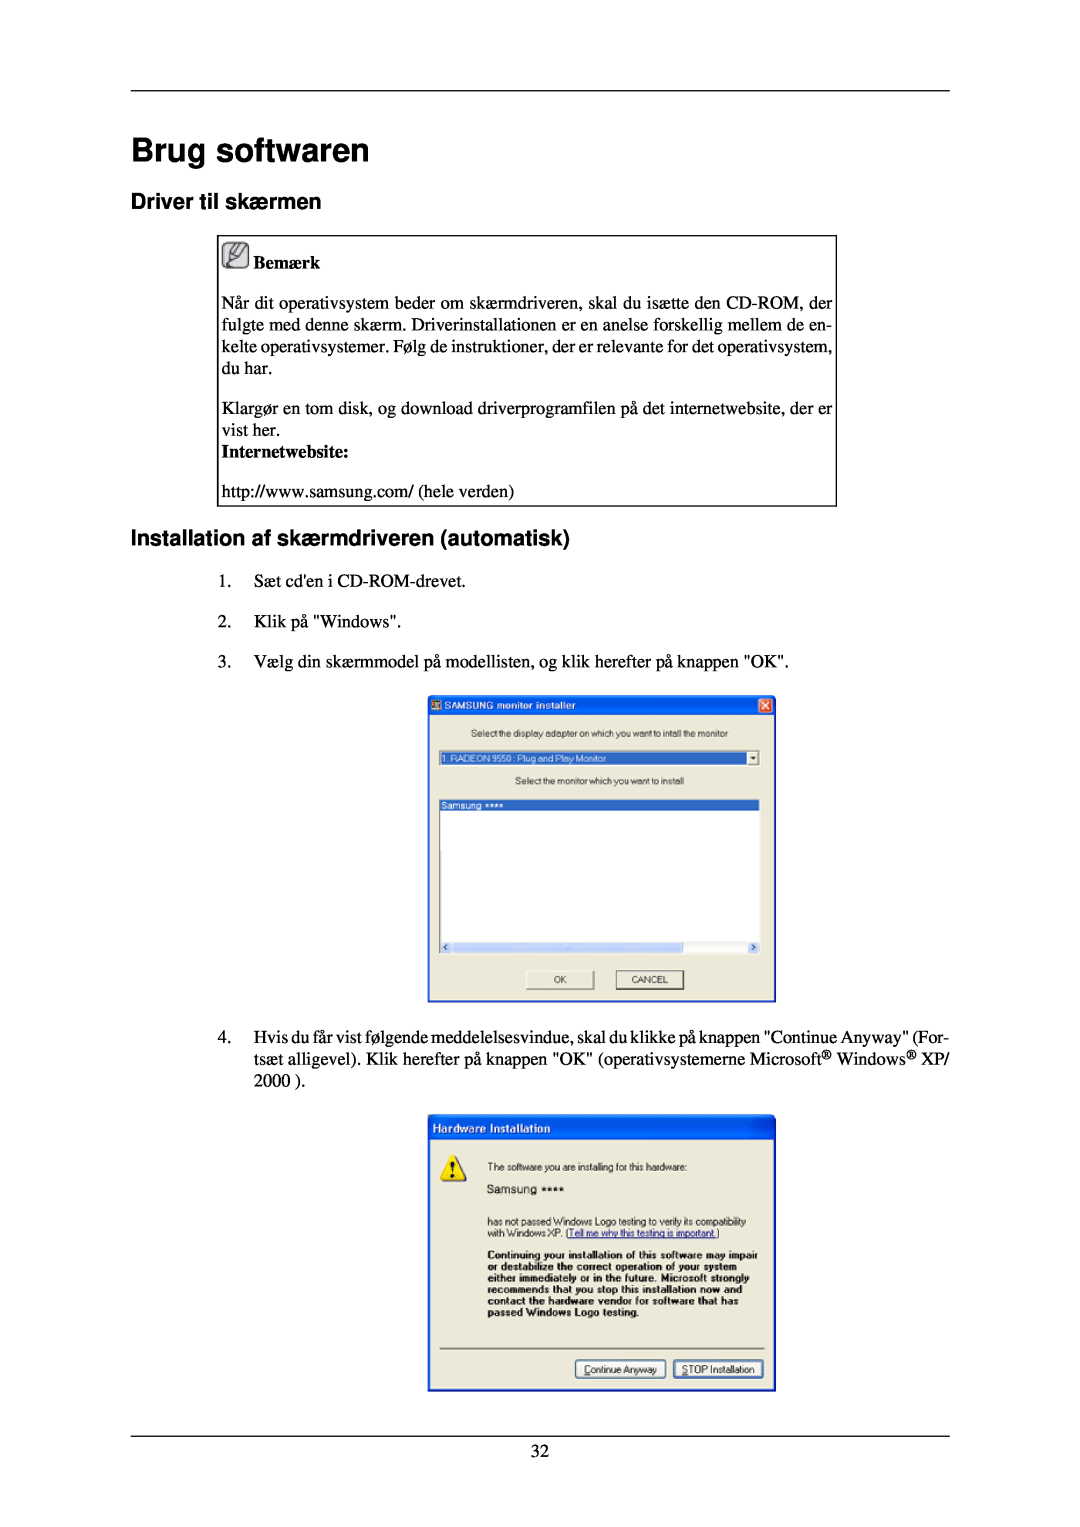 Samsung LH46TCUMBG/EN manual Brug softwaren, Driver til skærmen, Installation af skærmdriveren automatisk, Internetwebsite 